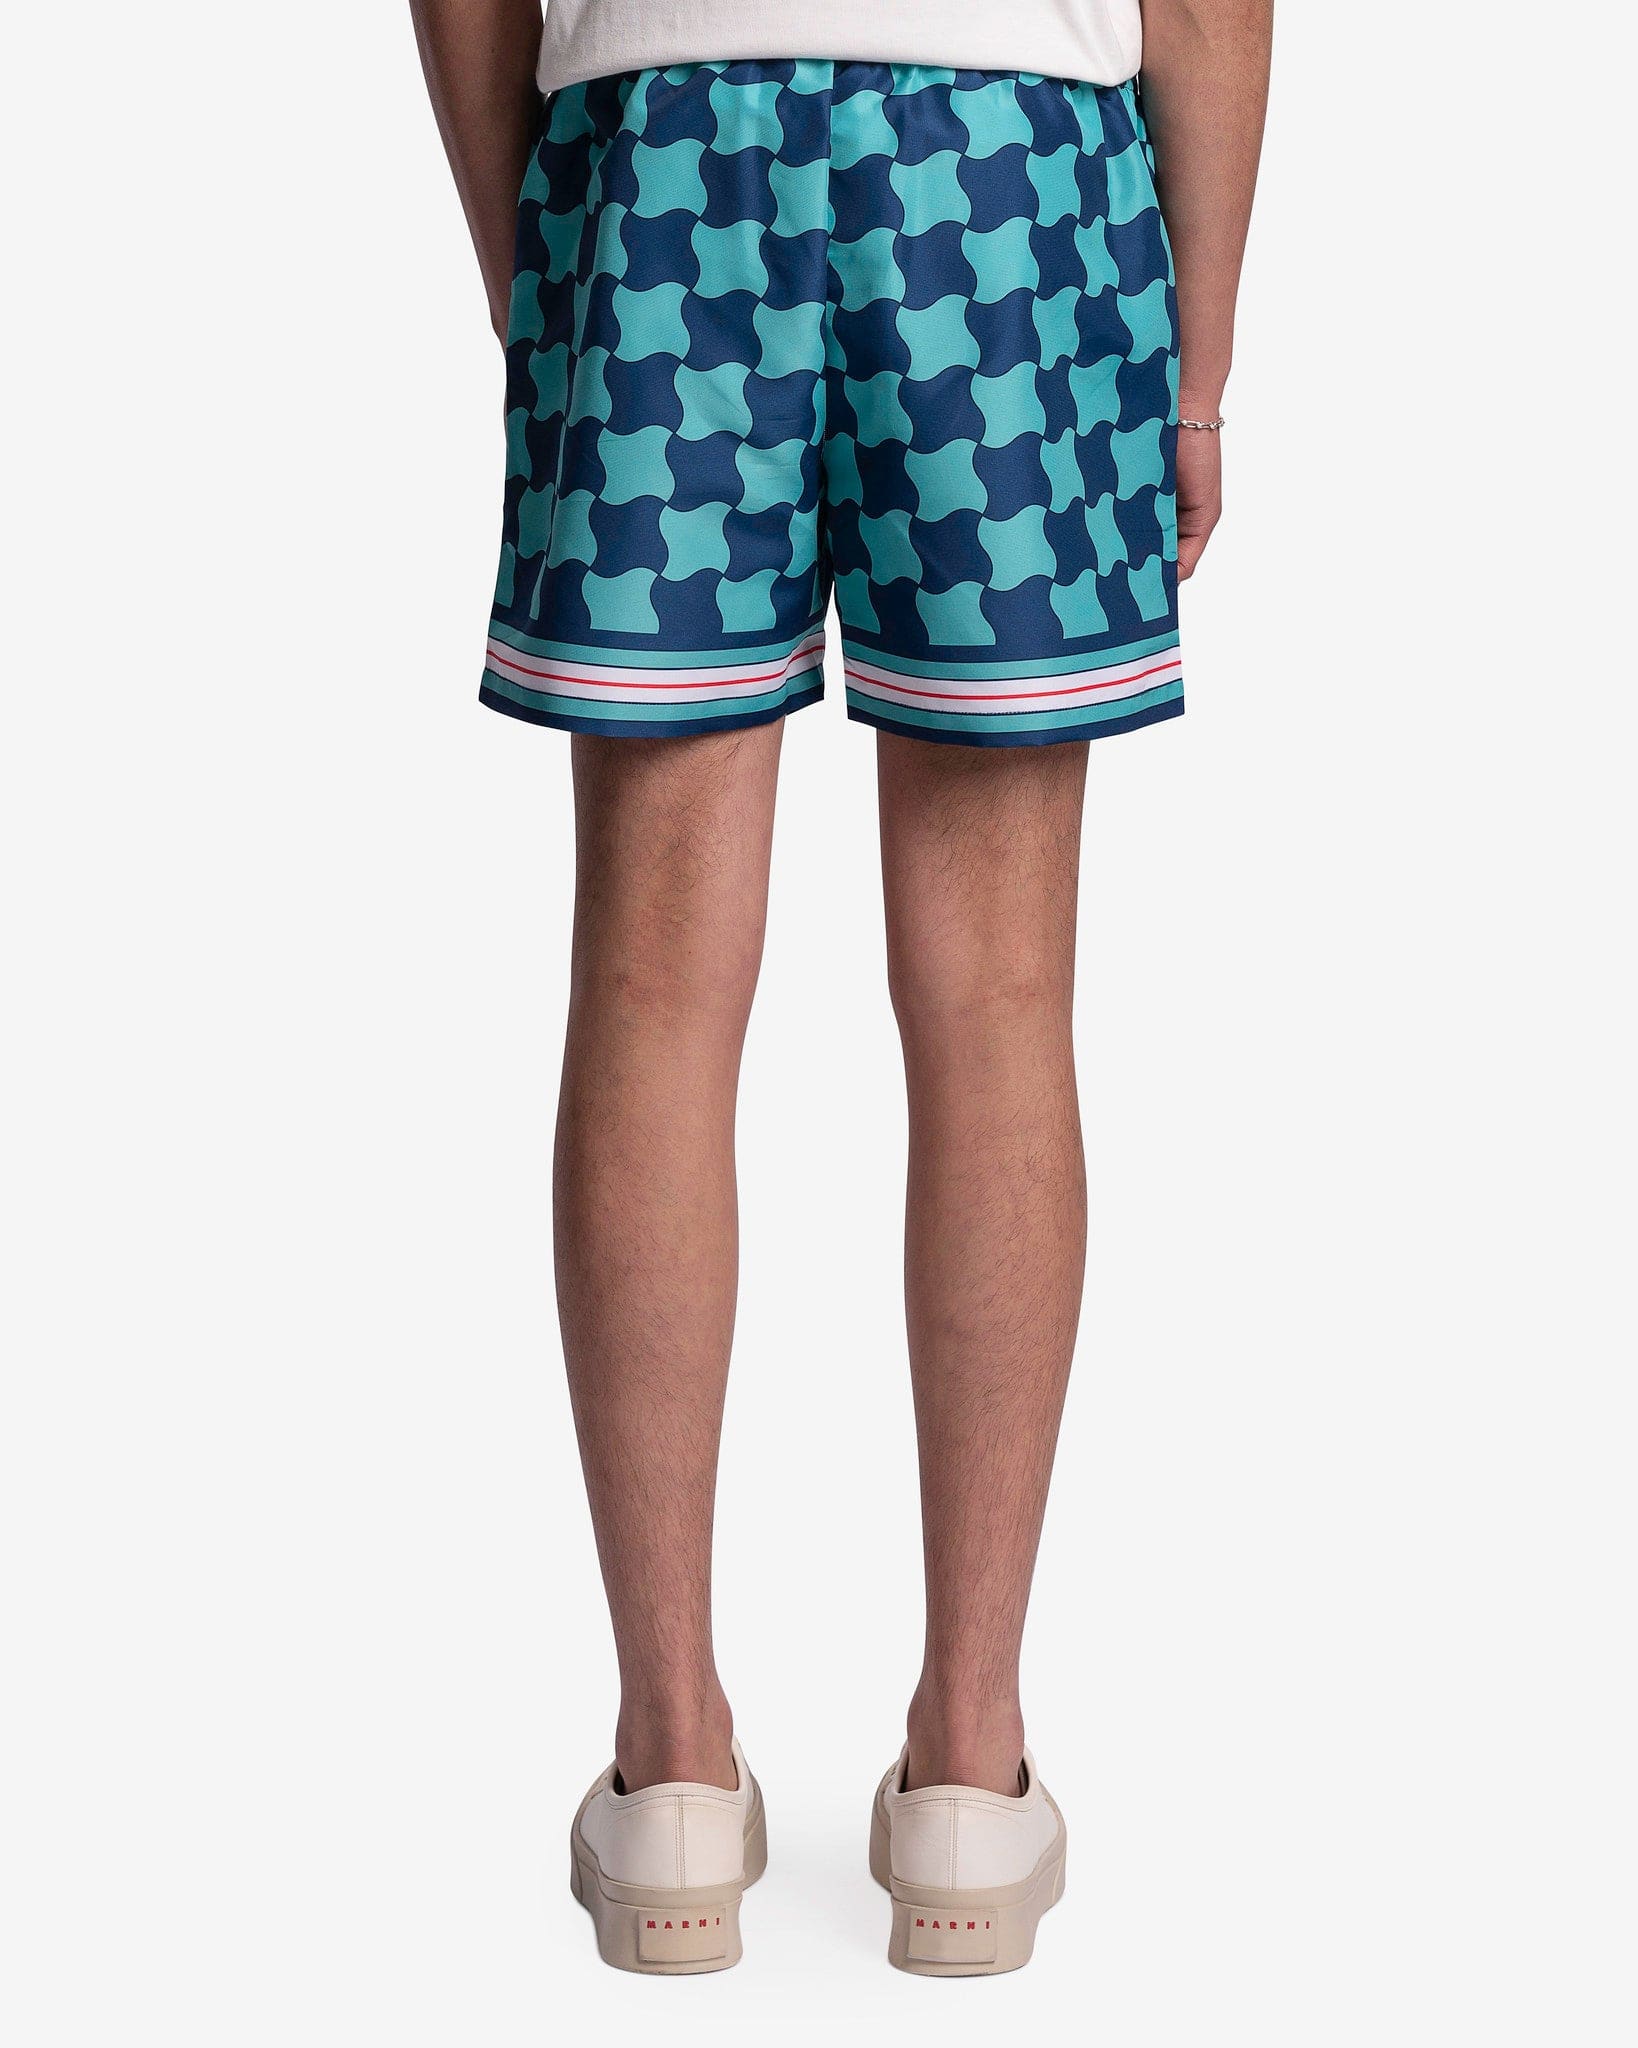 Casablanca Men's Shorts Pool Tile Printed Swim Trunks in Multi